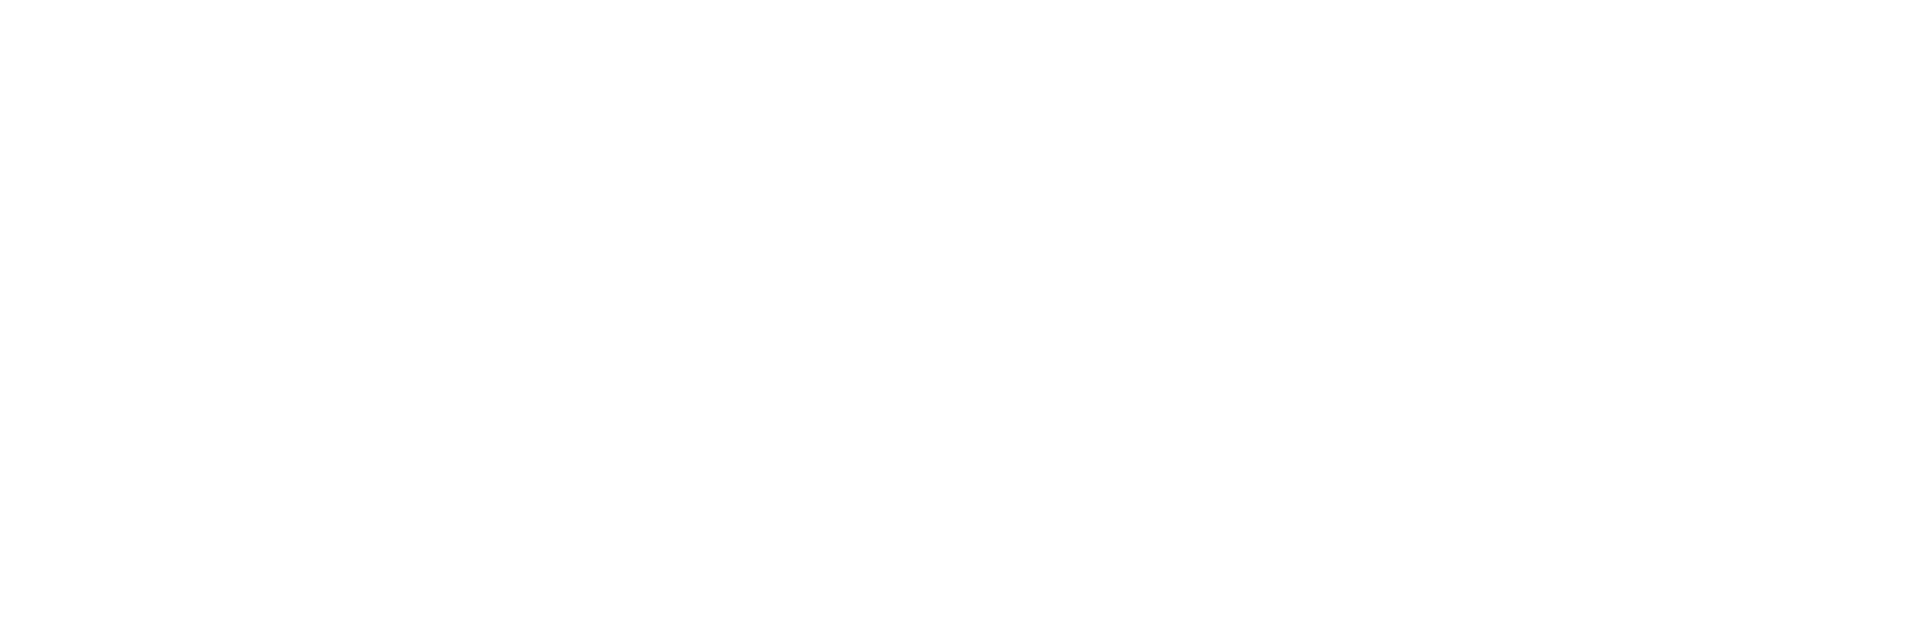 Encore Management Logo